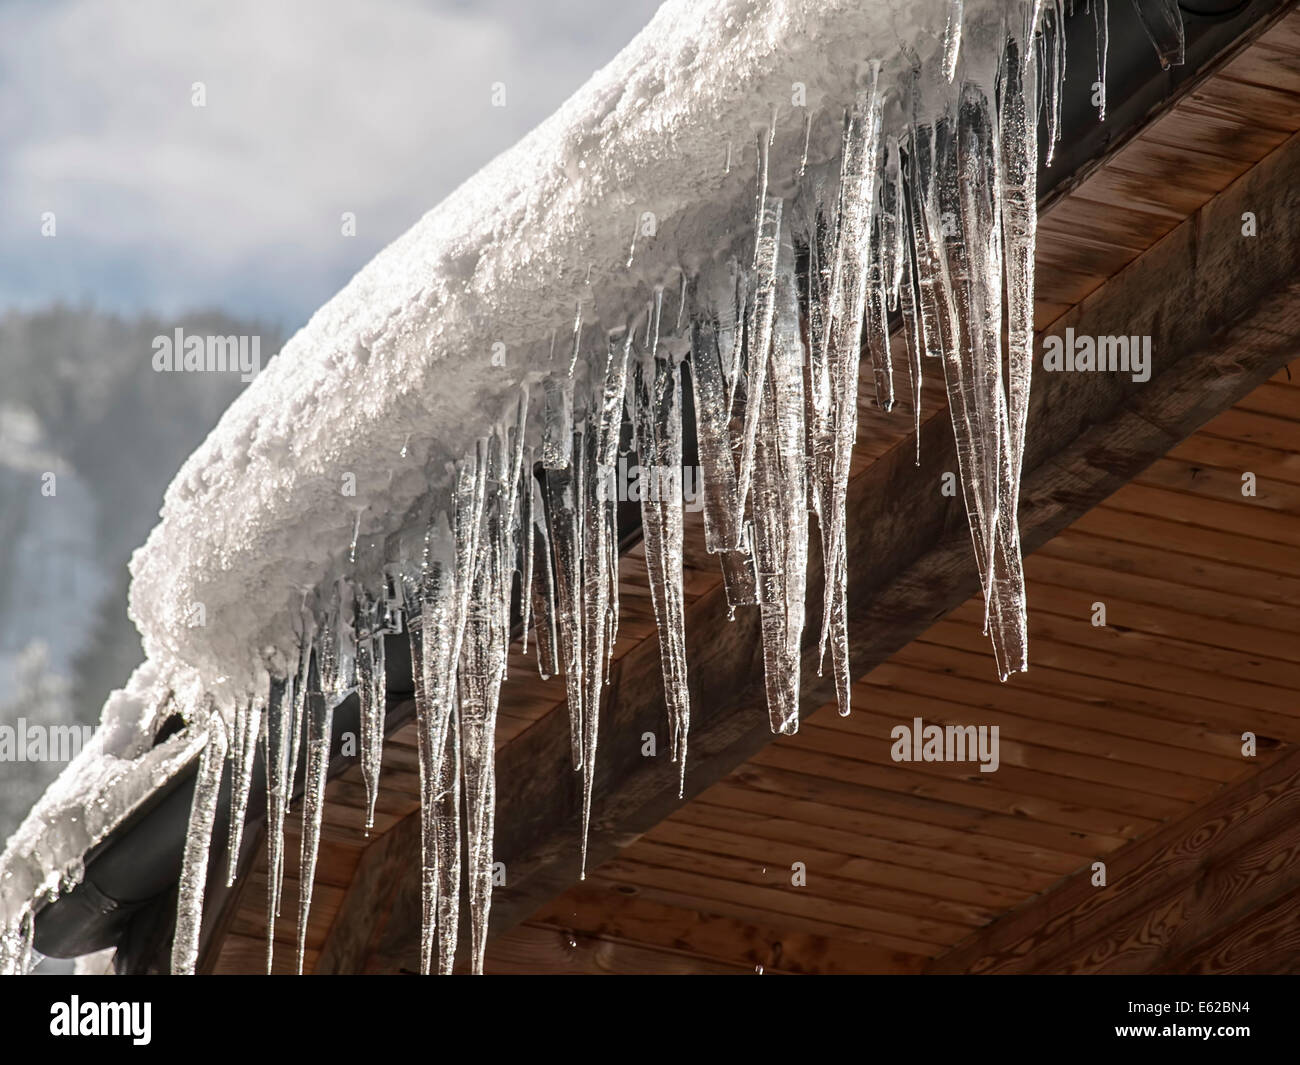 Ghiaccioli e neve sul tetto closeup, per l'inverno,freddo, temi meteo Foto Stock